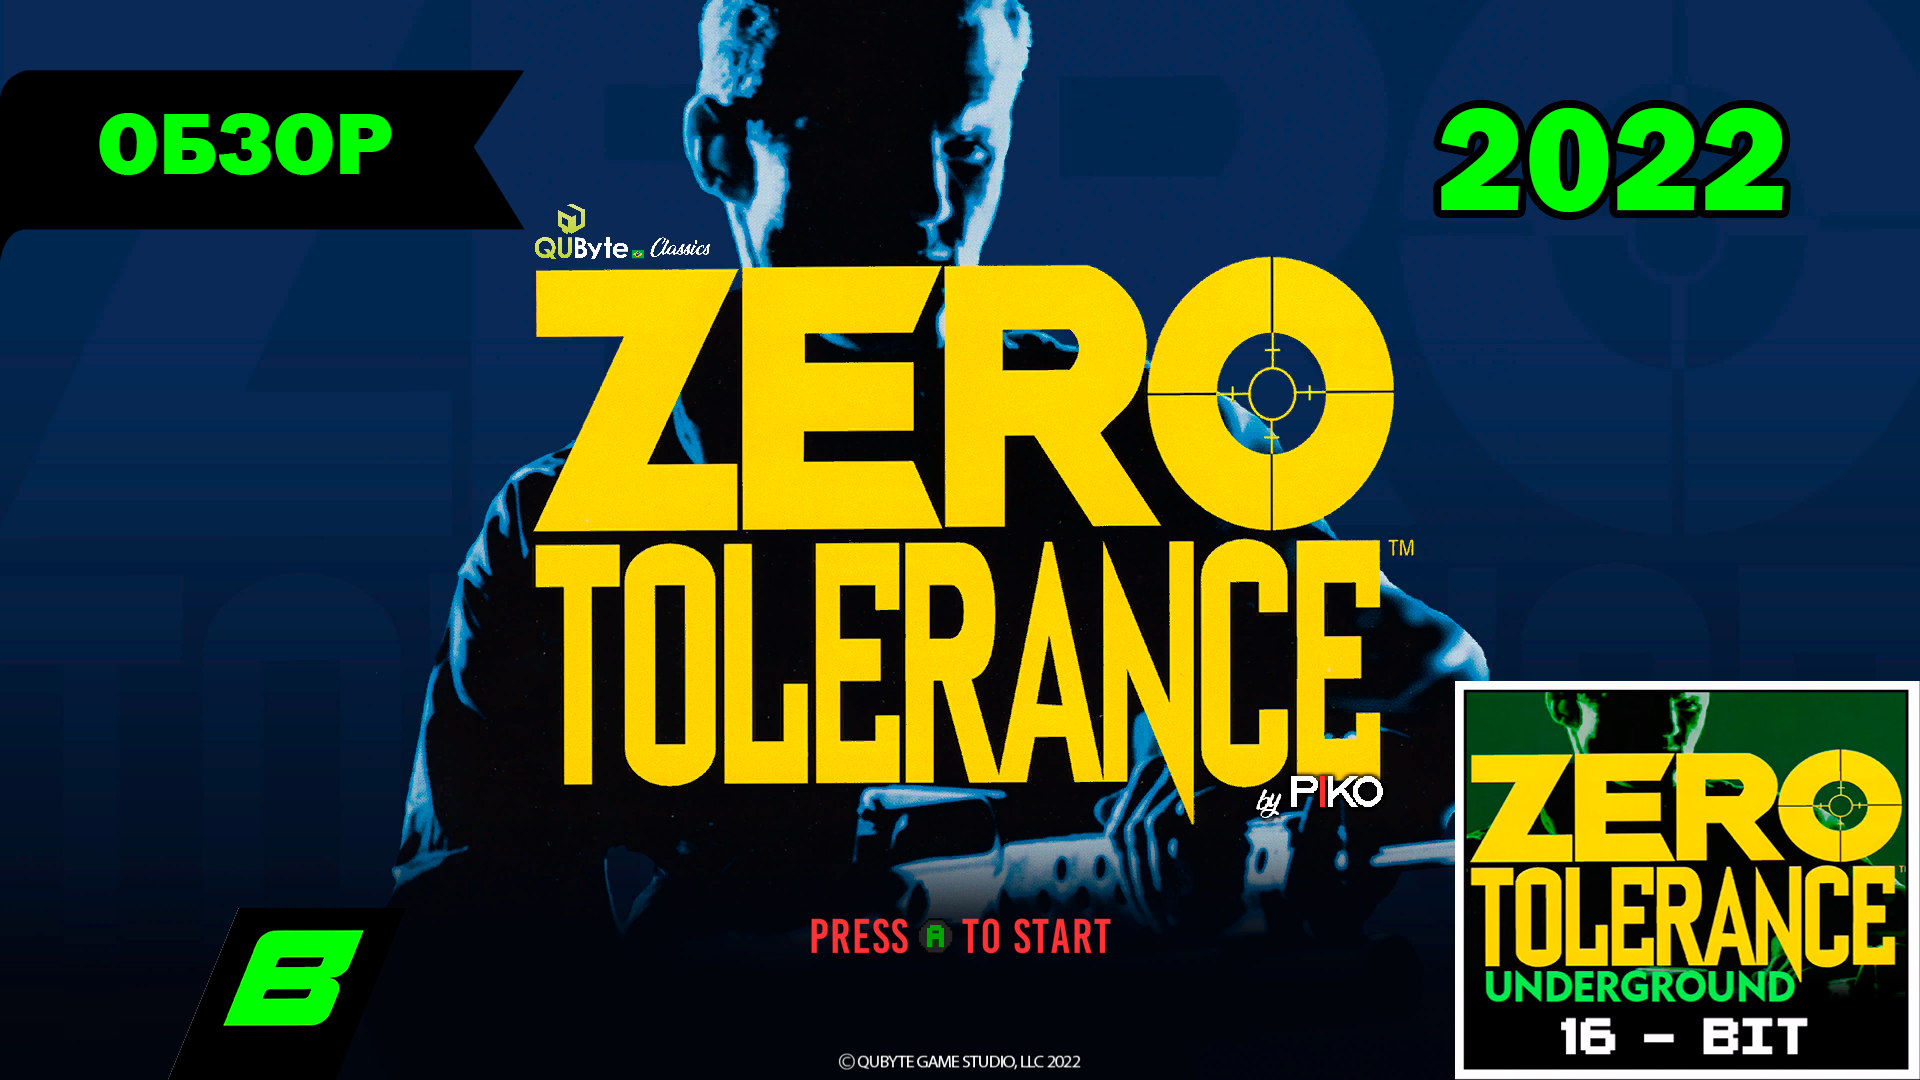 Beyond Zero tolerance. Zero tolerance collection. Zero tolerance (игра). Zero tolerance collection ps4. Zero collection